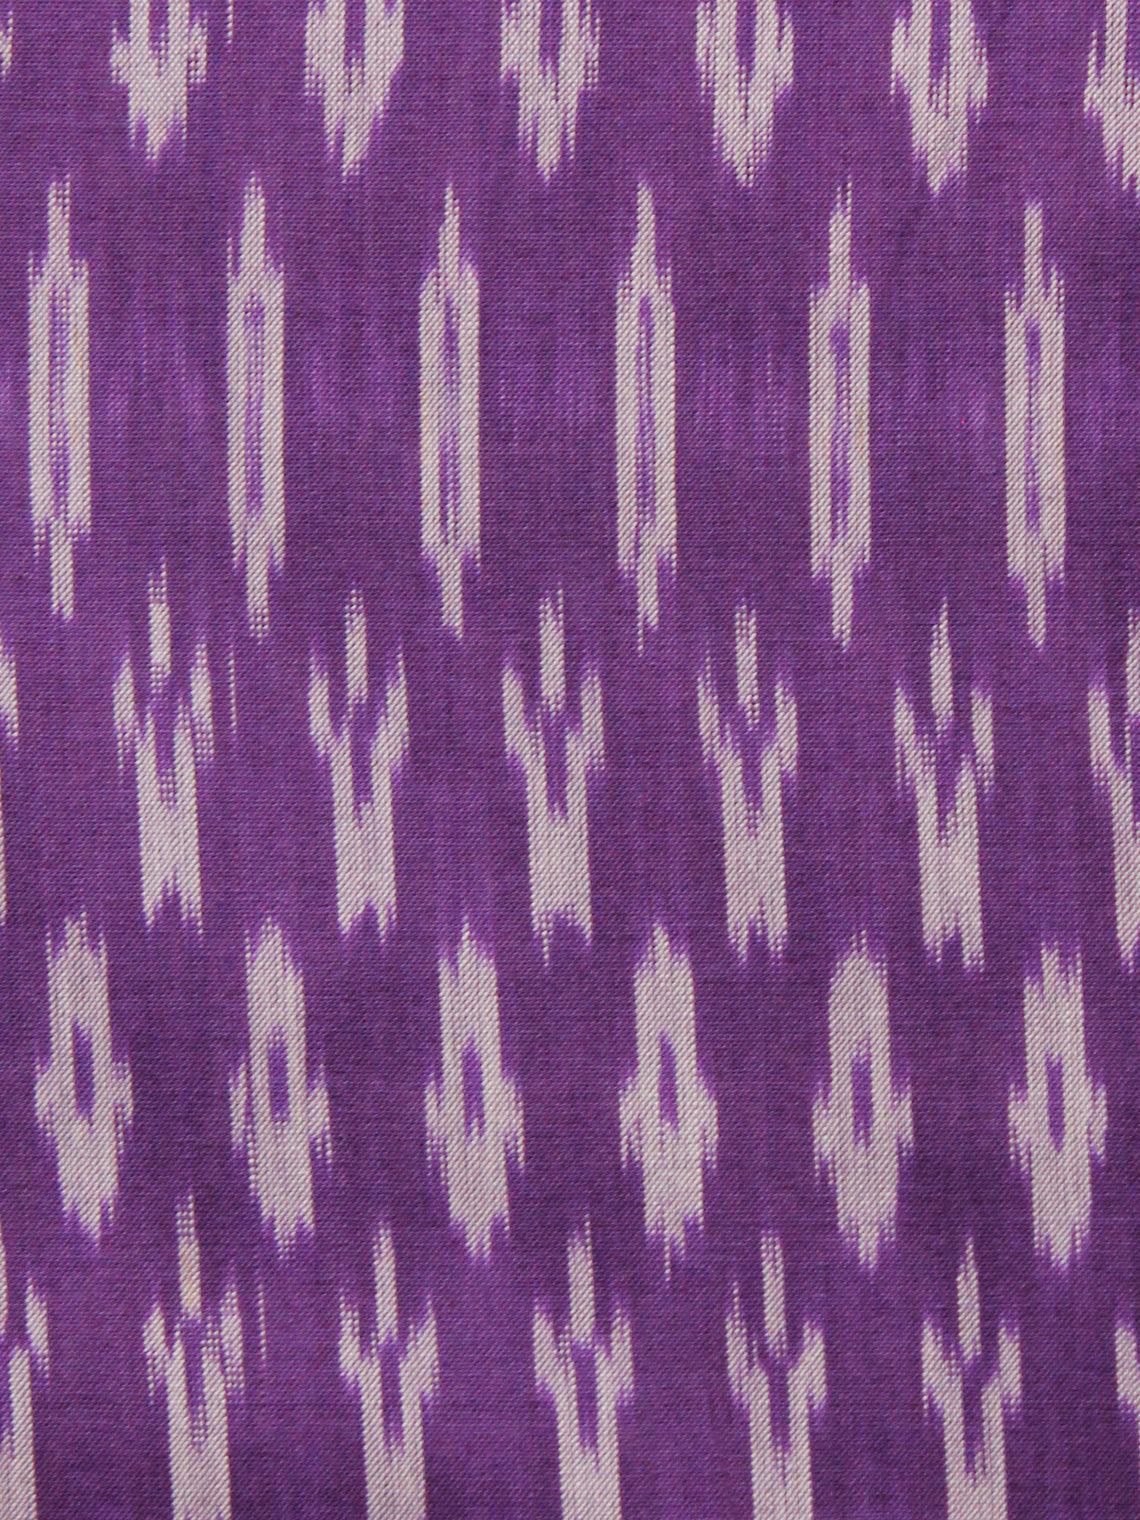 Buy Ikat Fabric Online at InduBindu.com